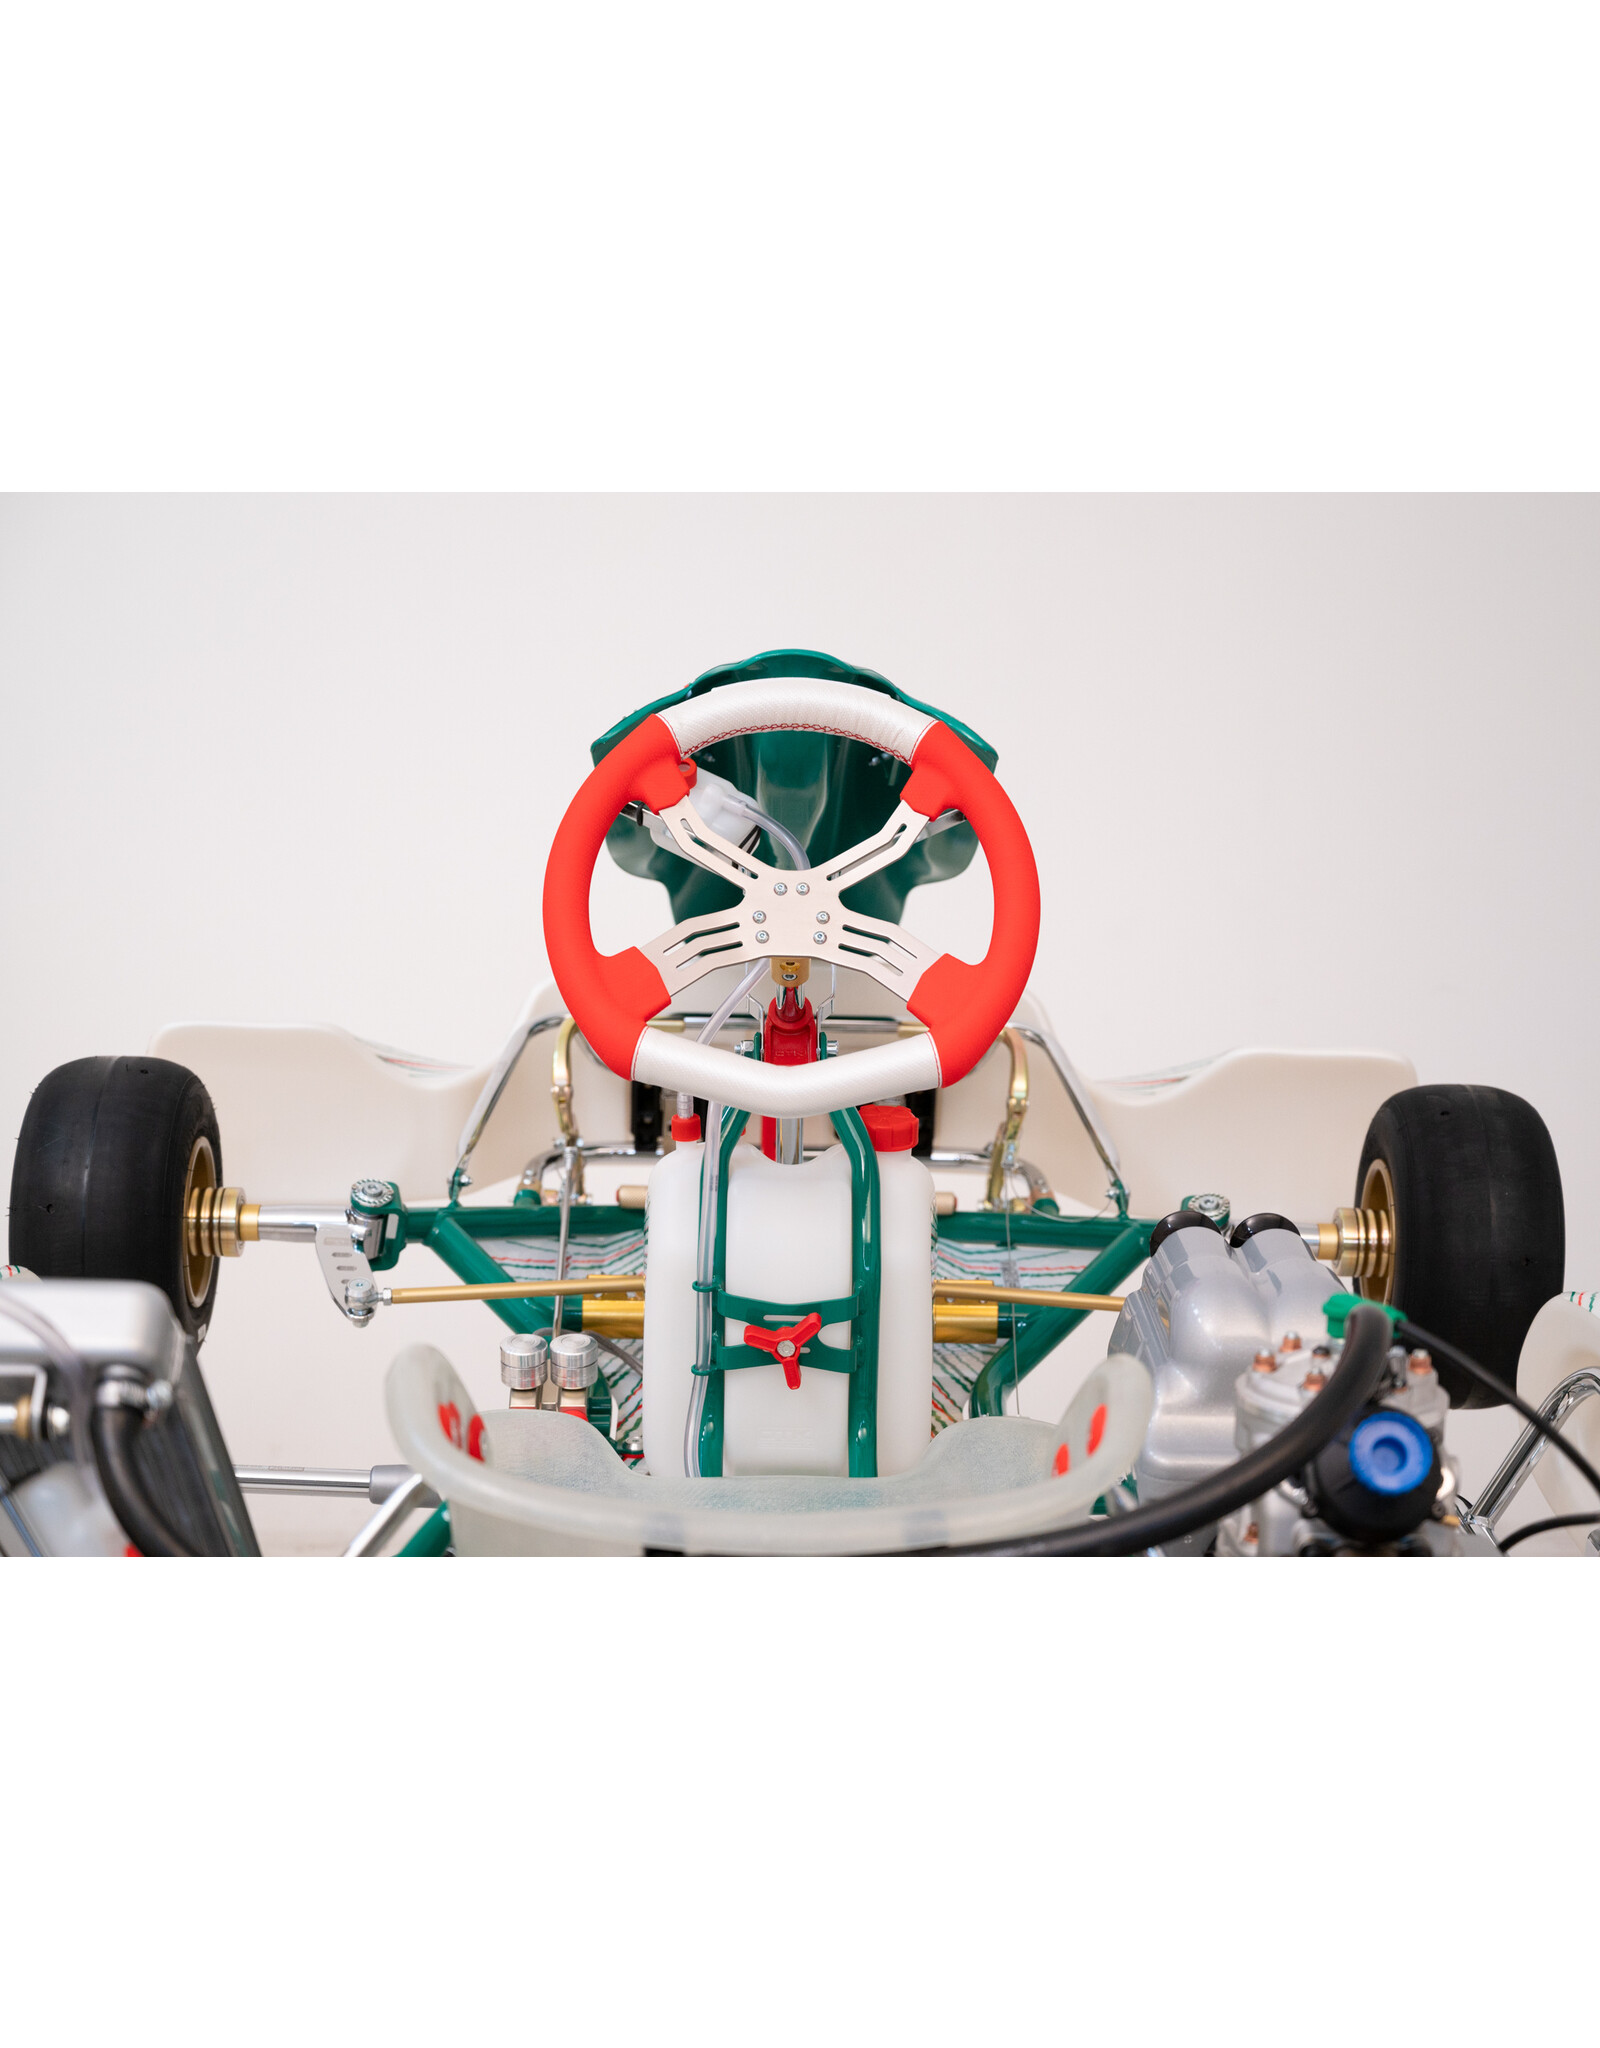 Tony Kart Tony Kart Racer 401RR BSD/180MM CIK OK/OKJ chassis